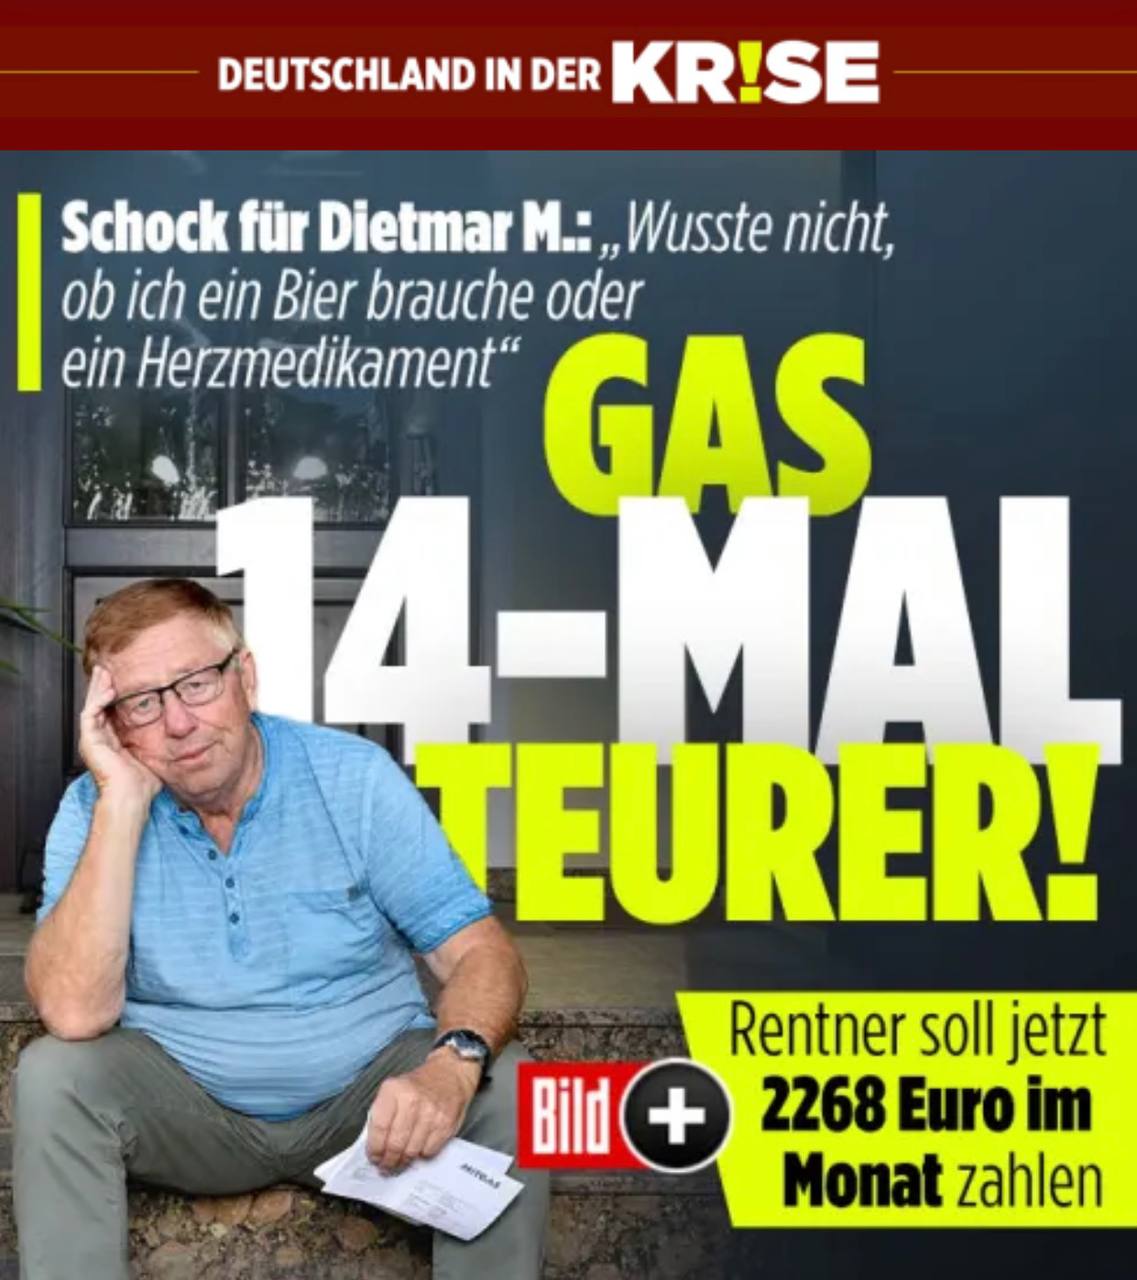 Германские пенсионеры теперь должны платить 2268 евро за газ